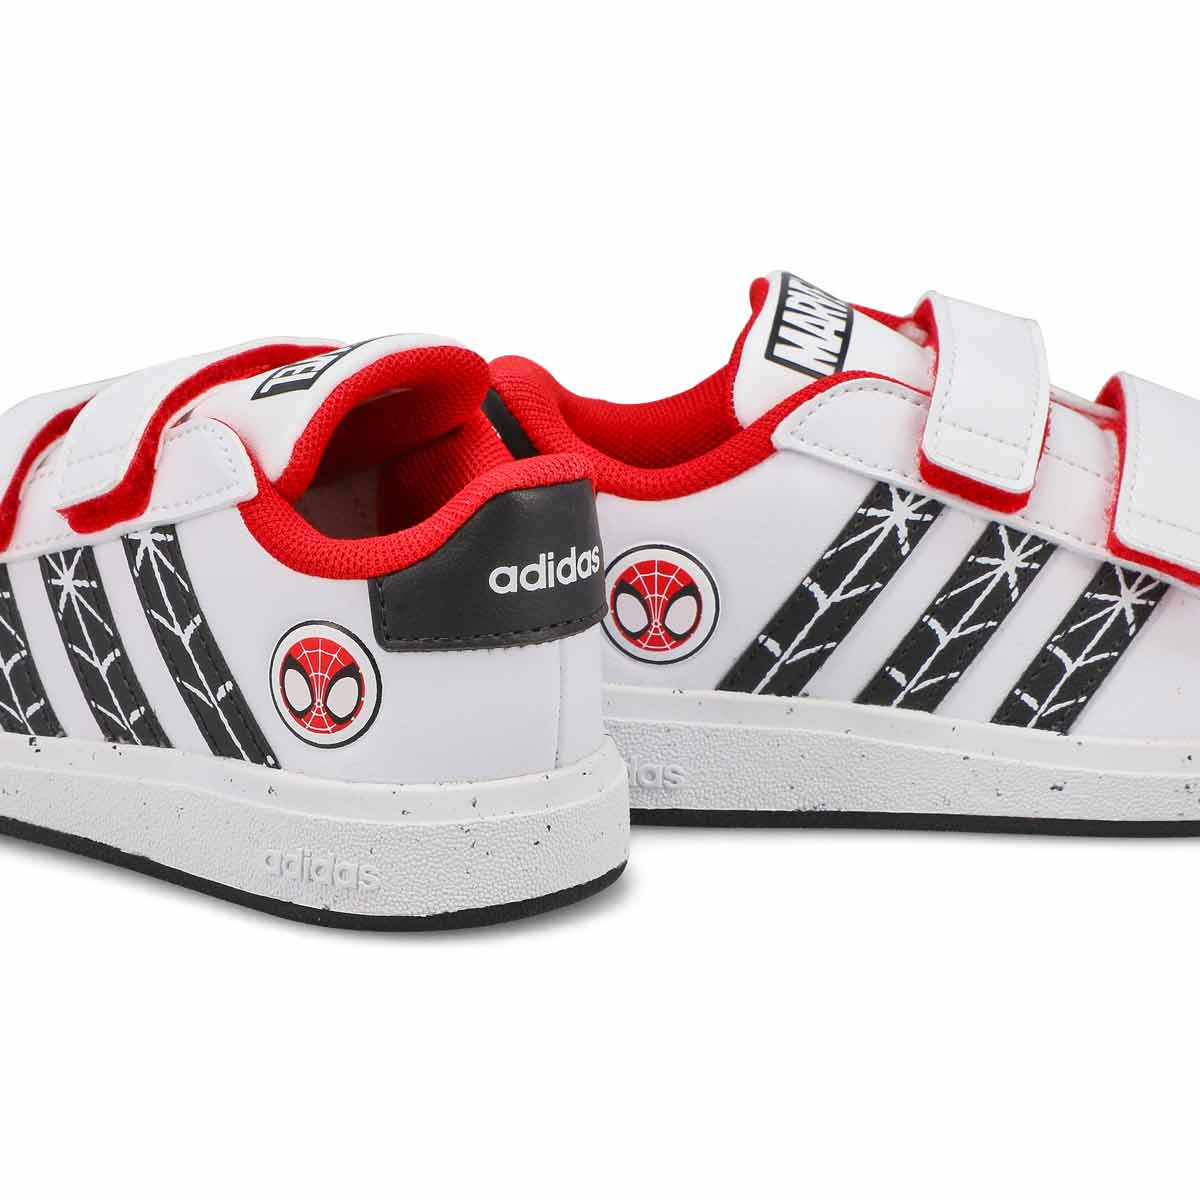 Infants' Grand Court Spiderman Sneaker - White/Black/Red